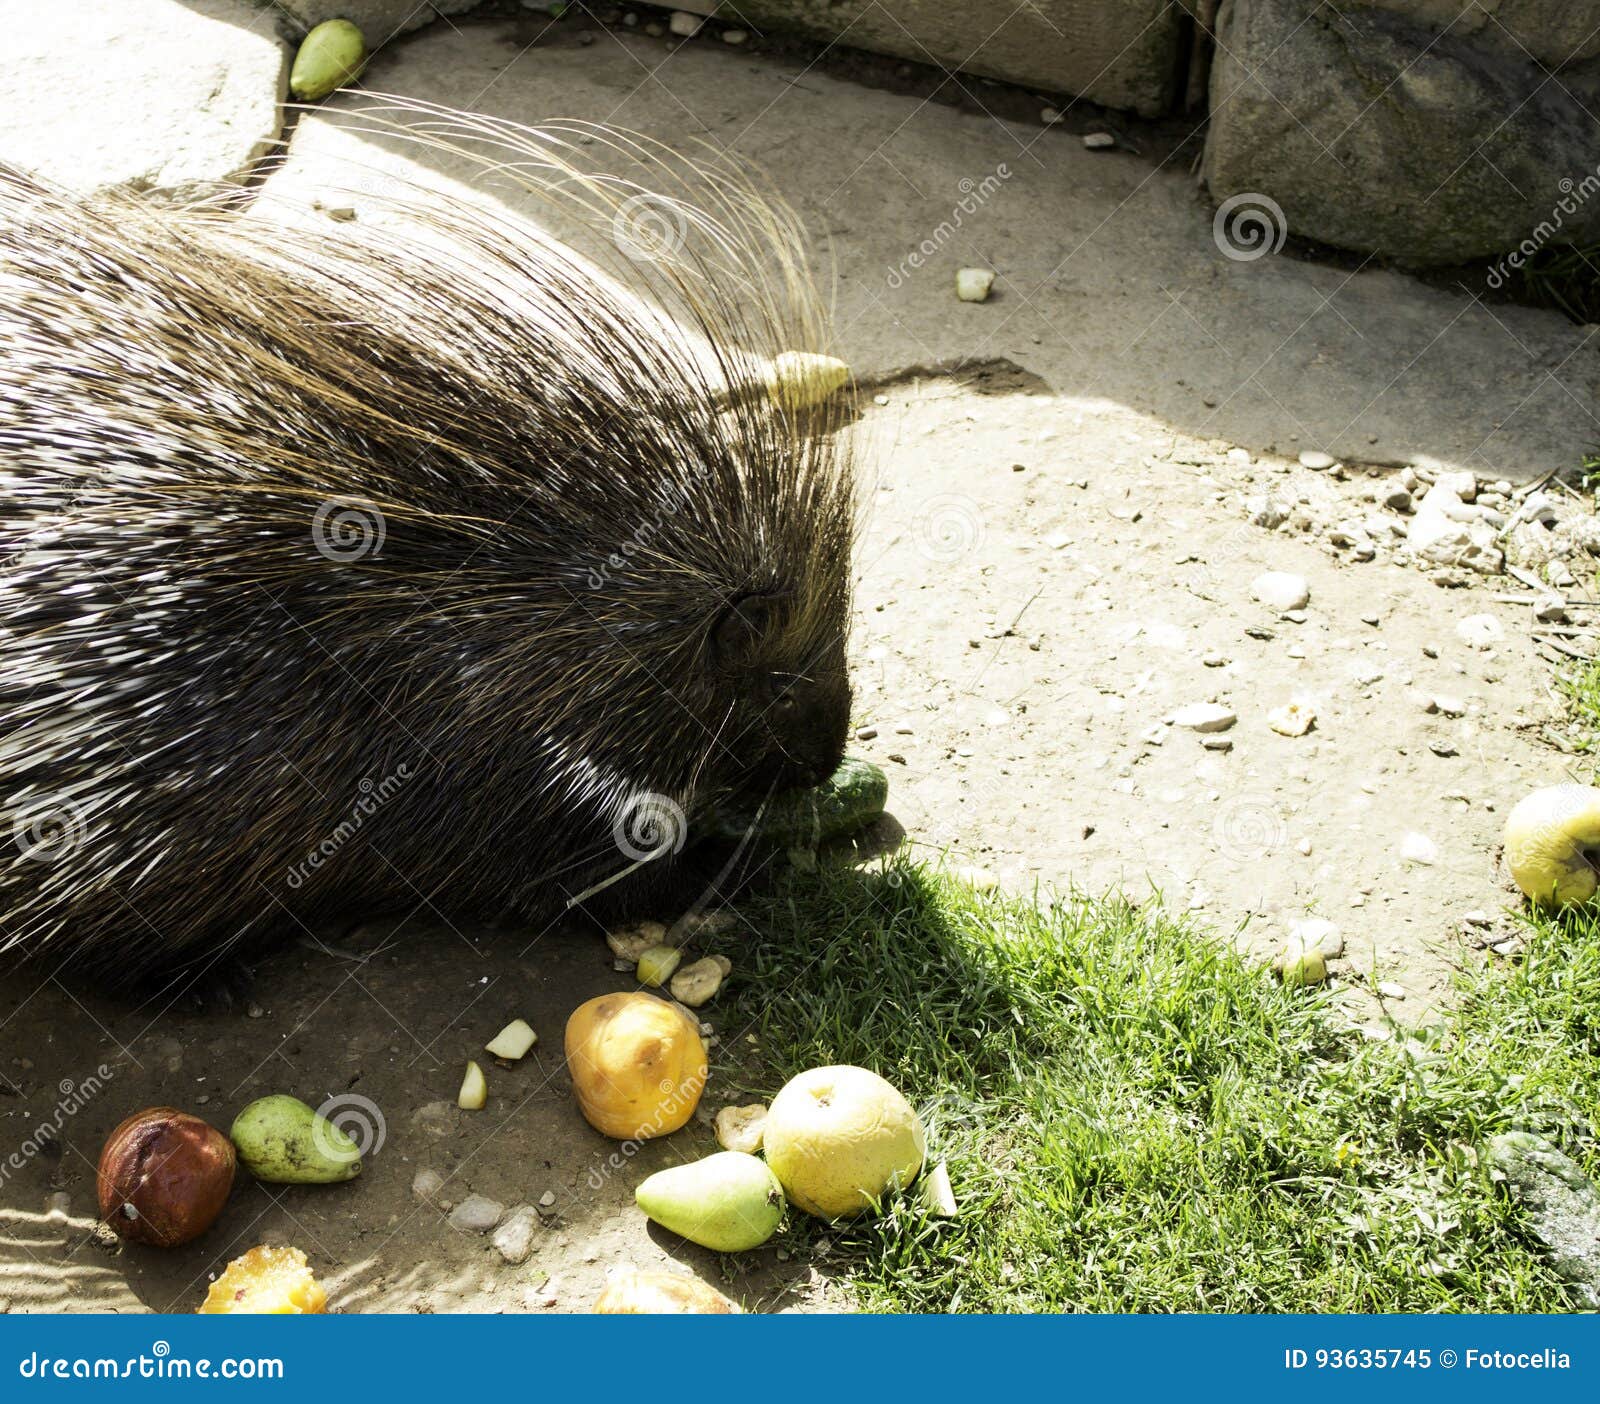 porcupine eating fruit